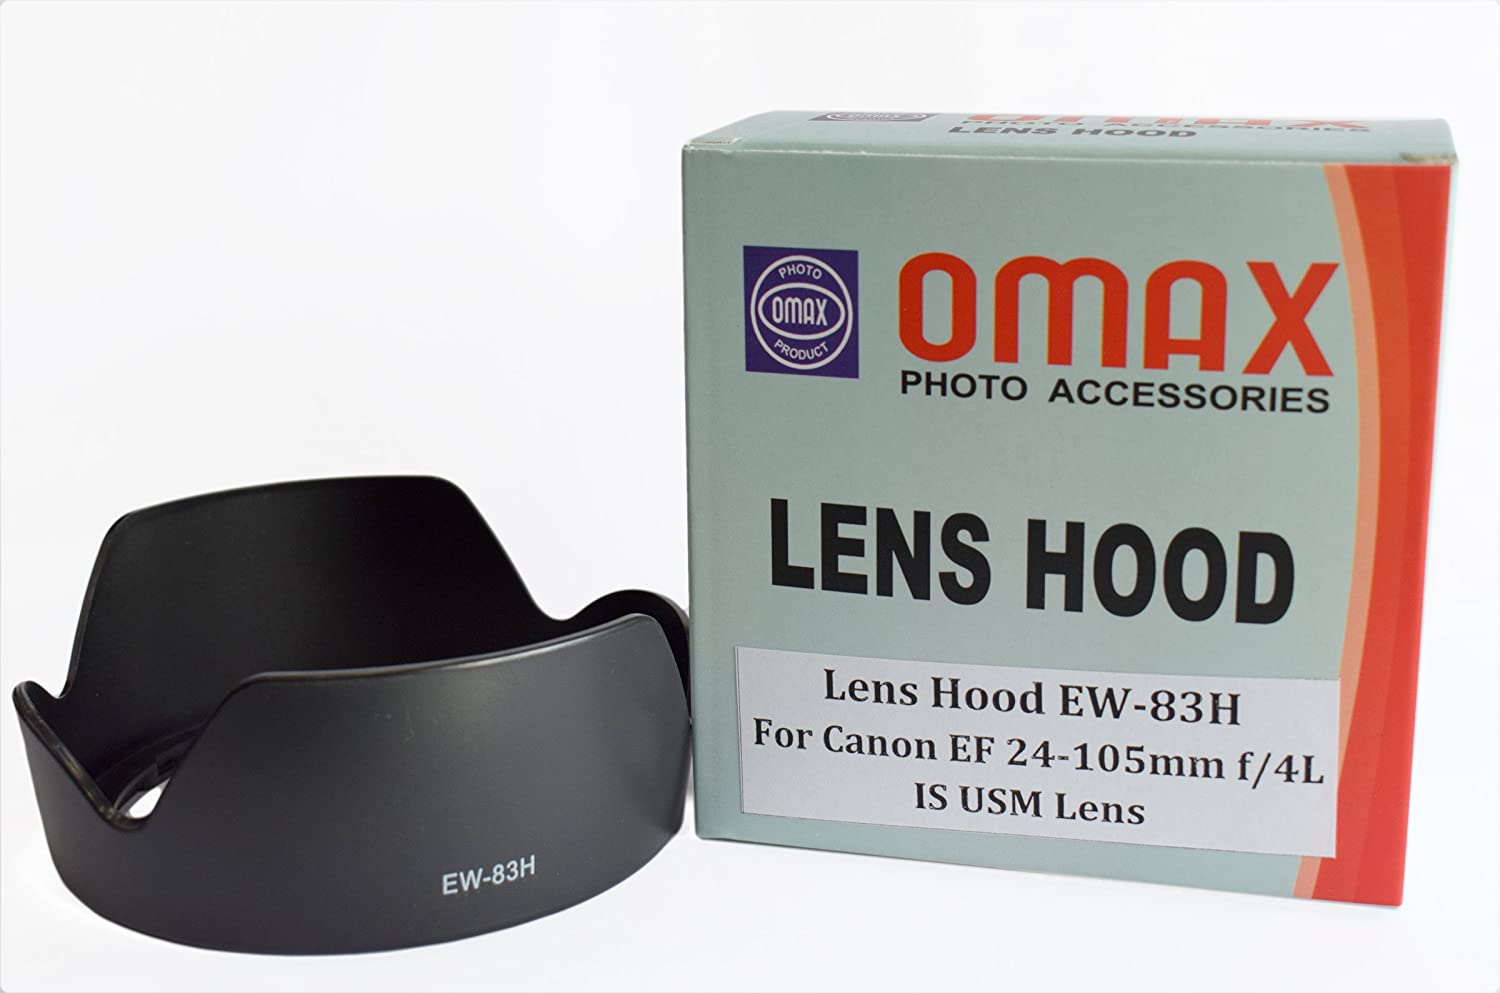 Omax Lens Hood EW-83H for Canon EF 24-105mm f/4L is USM Lens - The Camerashop